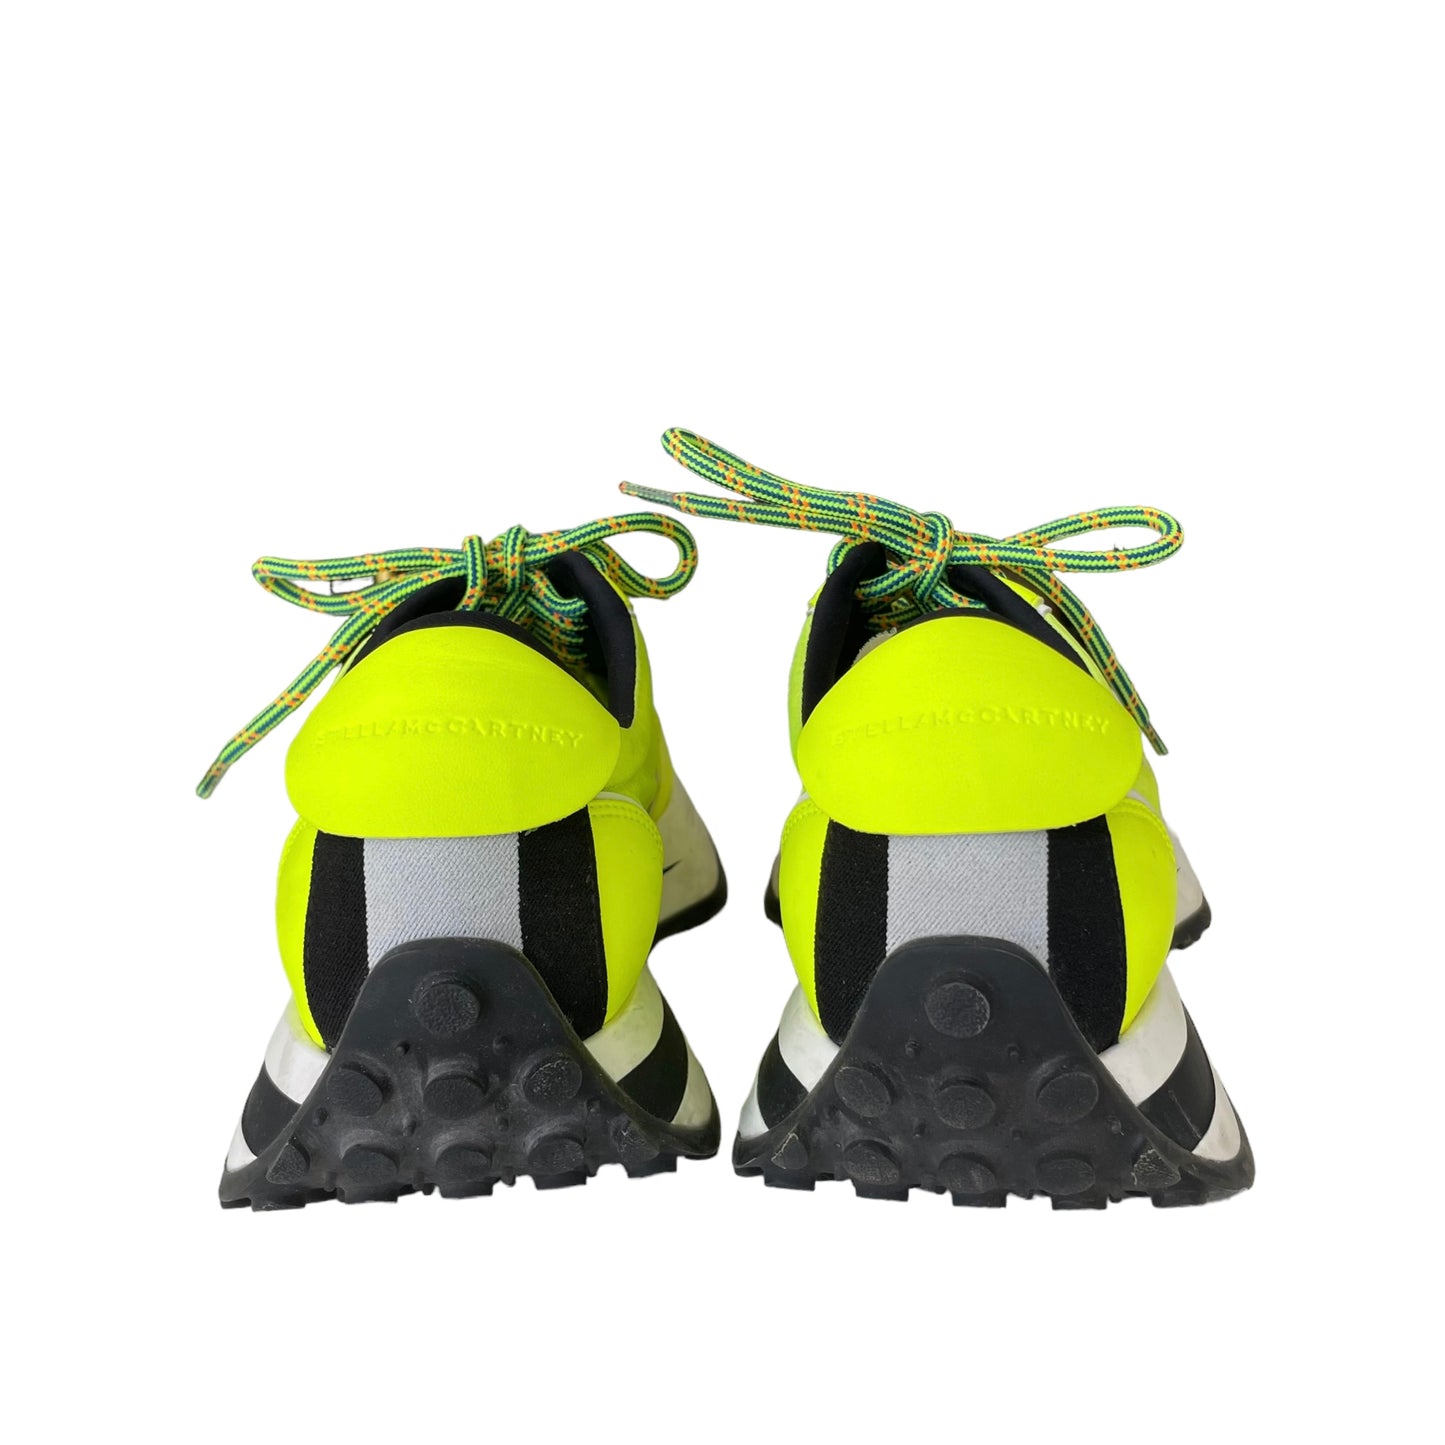 Neon Yellow Running Shoes - 8